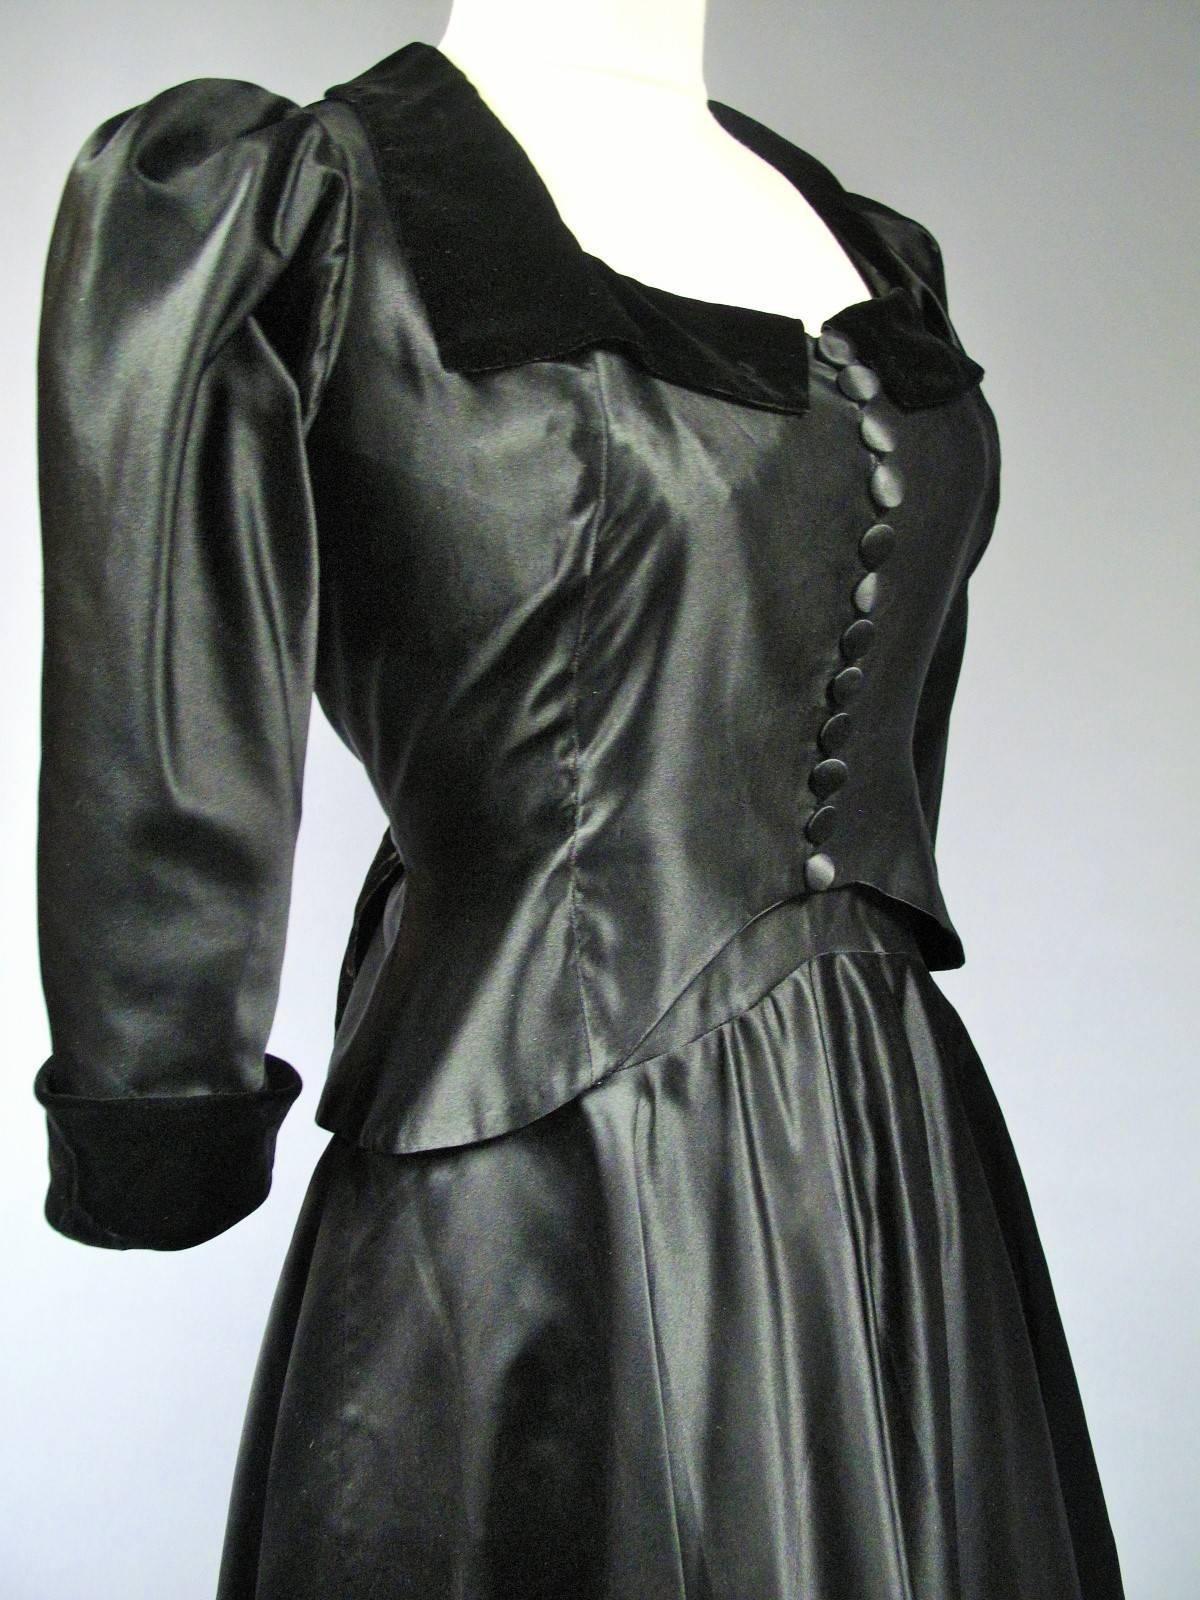 Um 1935
Frankreich Haute Couture
Abendkleid Haute Couture Maggy Rouff aus schwarzem Satin und Samt von 1935. Jacke mit Rundhalsausschnitt, Kragen und Aufschlägen aus schwarzem Samt, Puffärmeln und zwölf Knöpfen auf der Vorderseite. Das Mieder wird